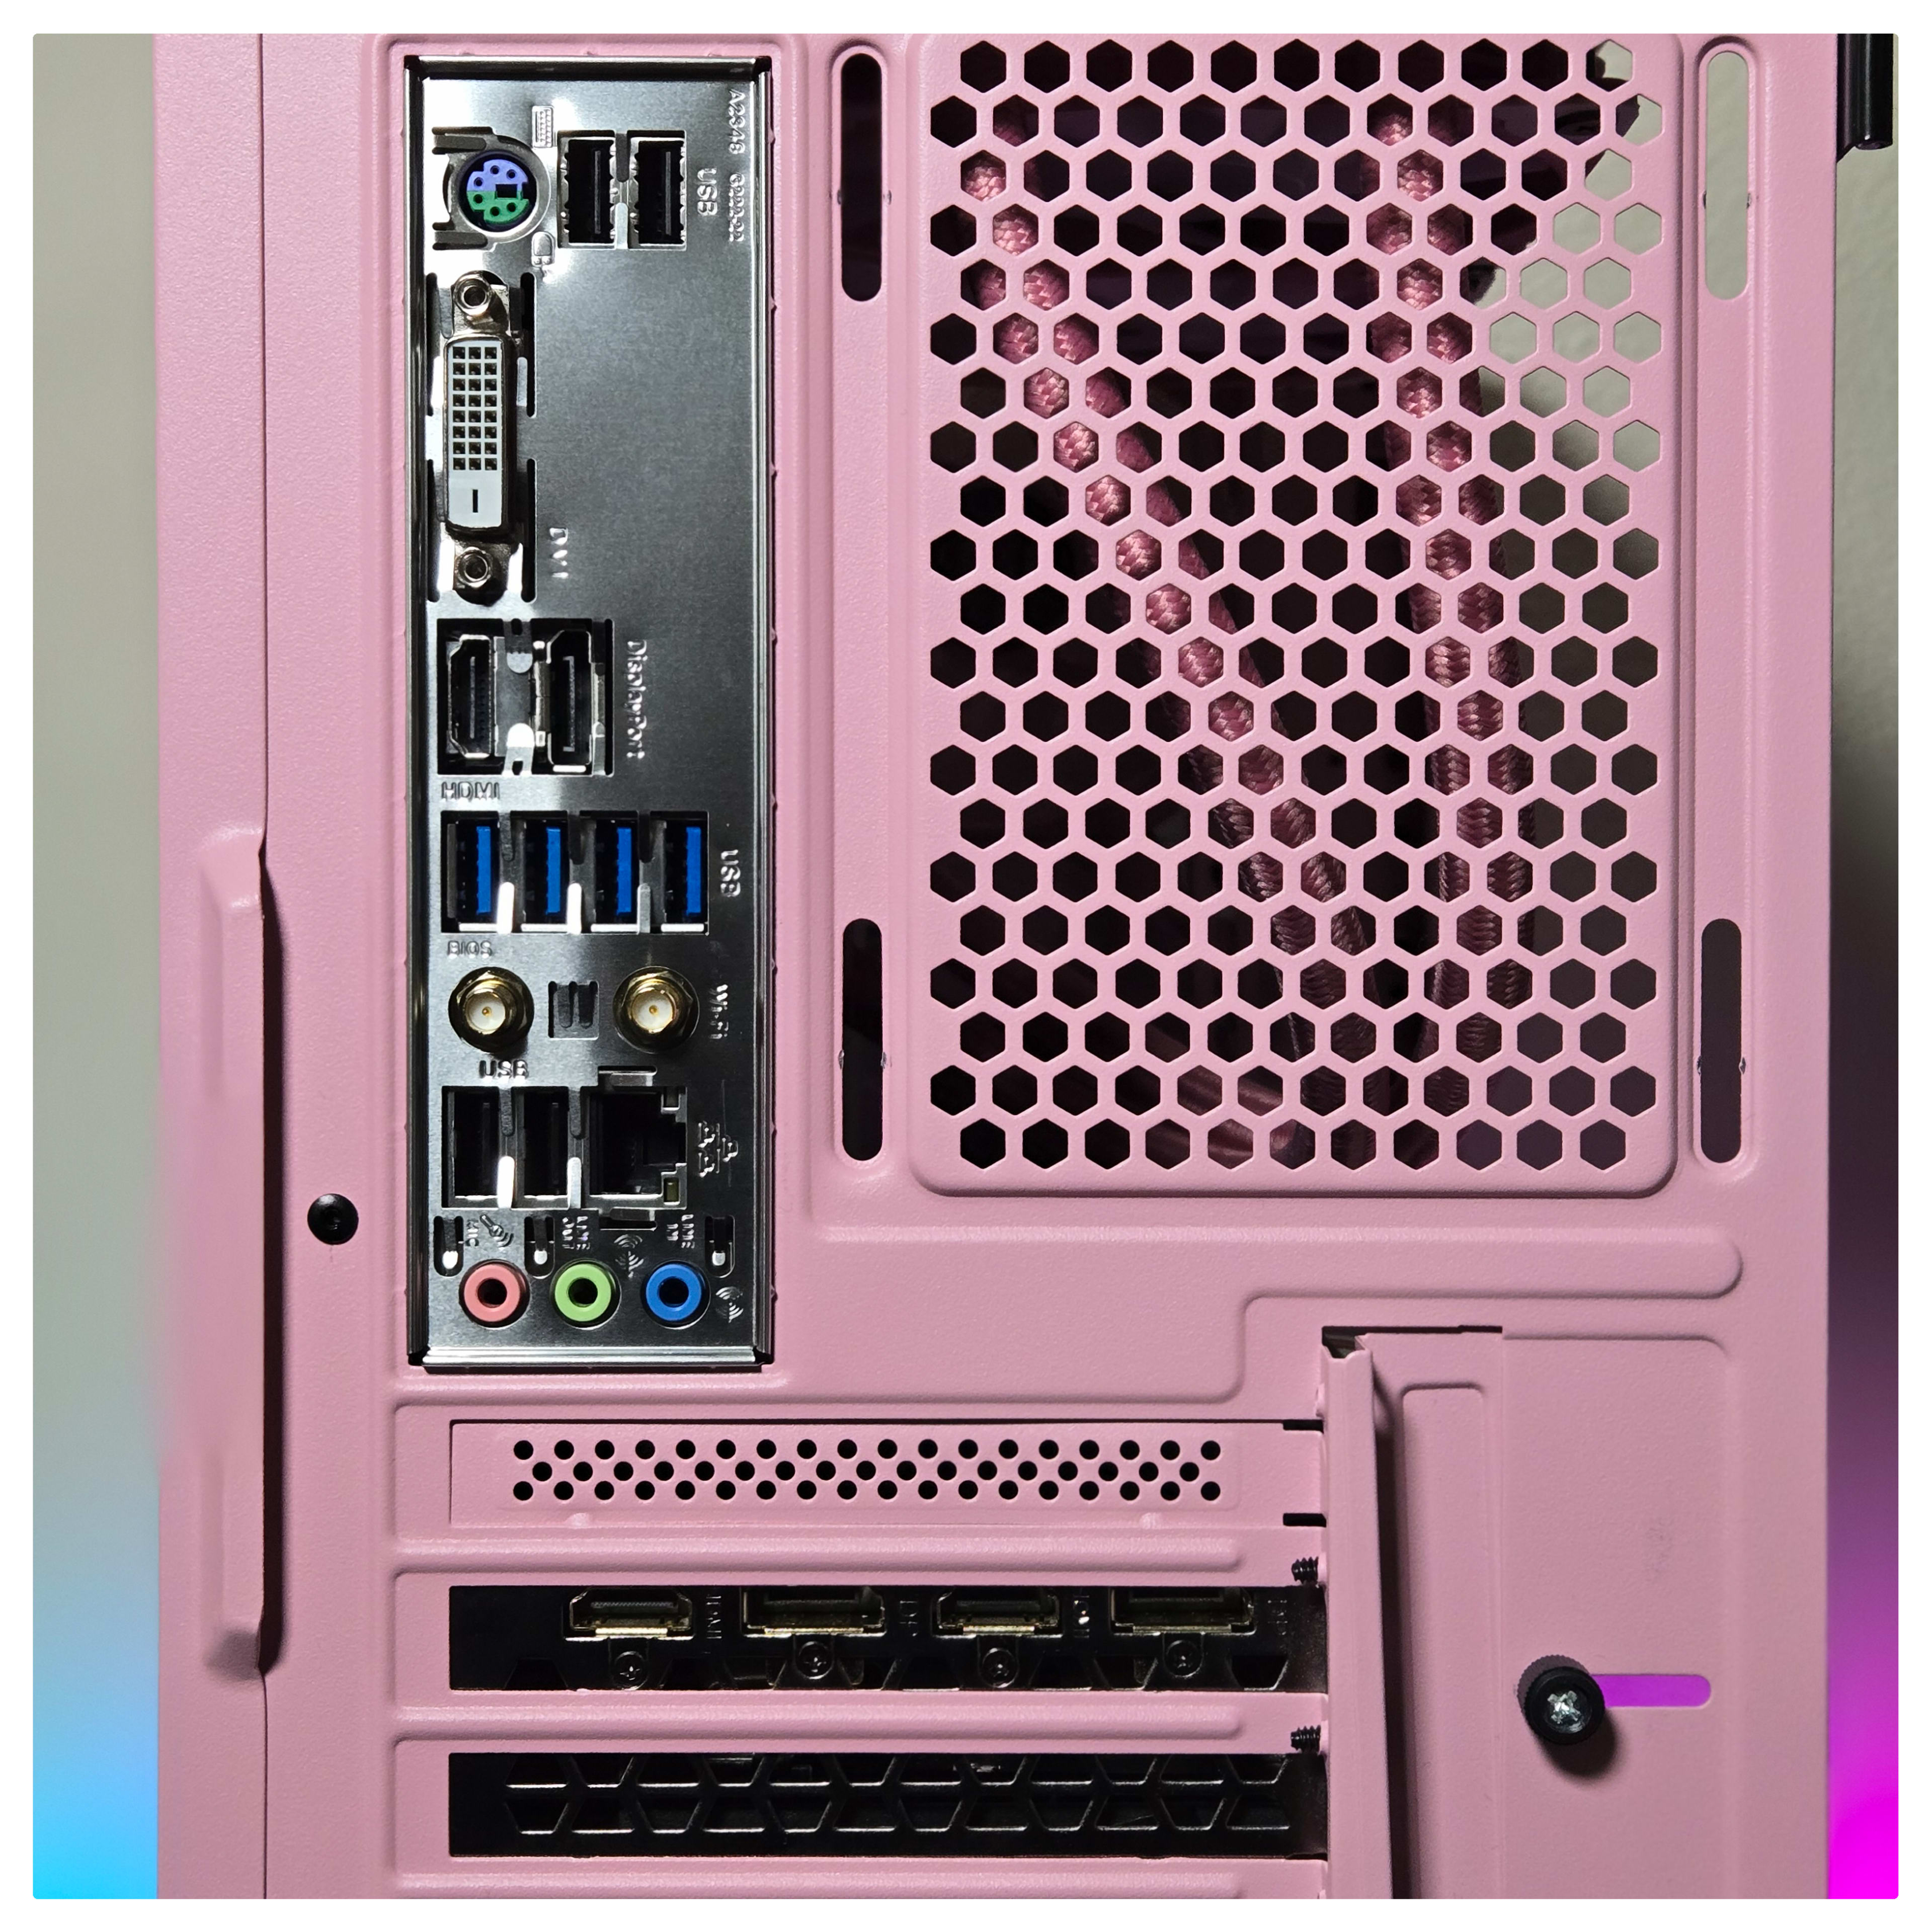 RTX 3070 Ti | Ryzen 7 3700x | Wi-Fi | Pink Gaming PC